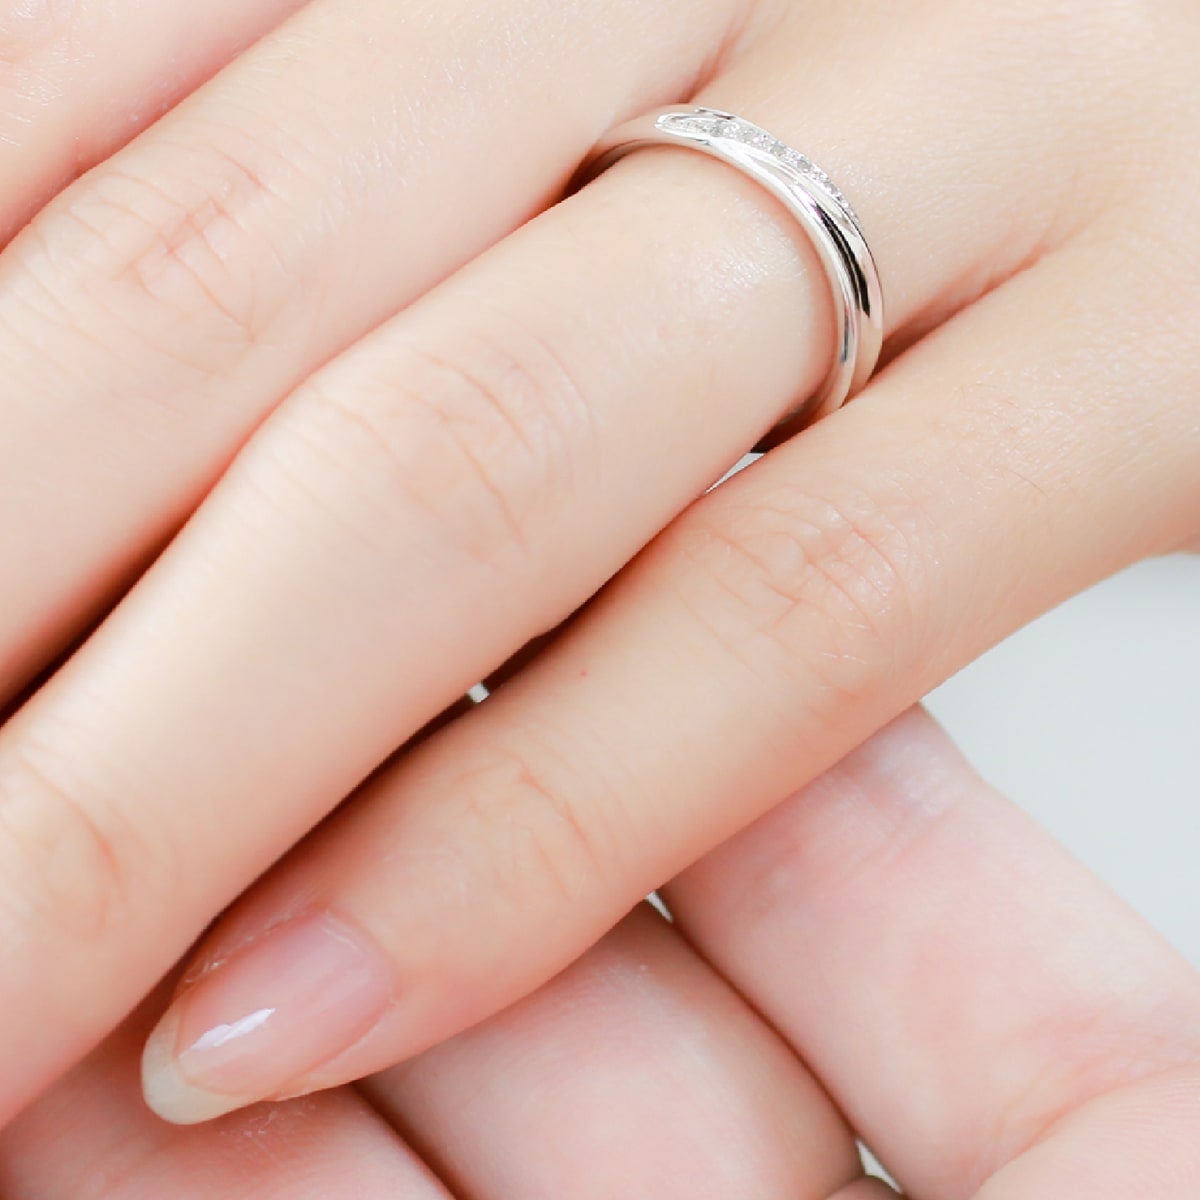 結婚指輪 ダイヤモンド 2本セット | 30341-30340